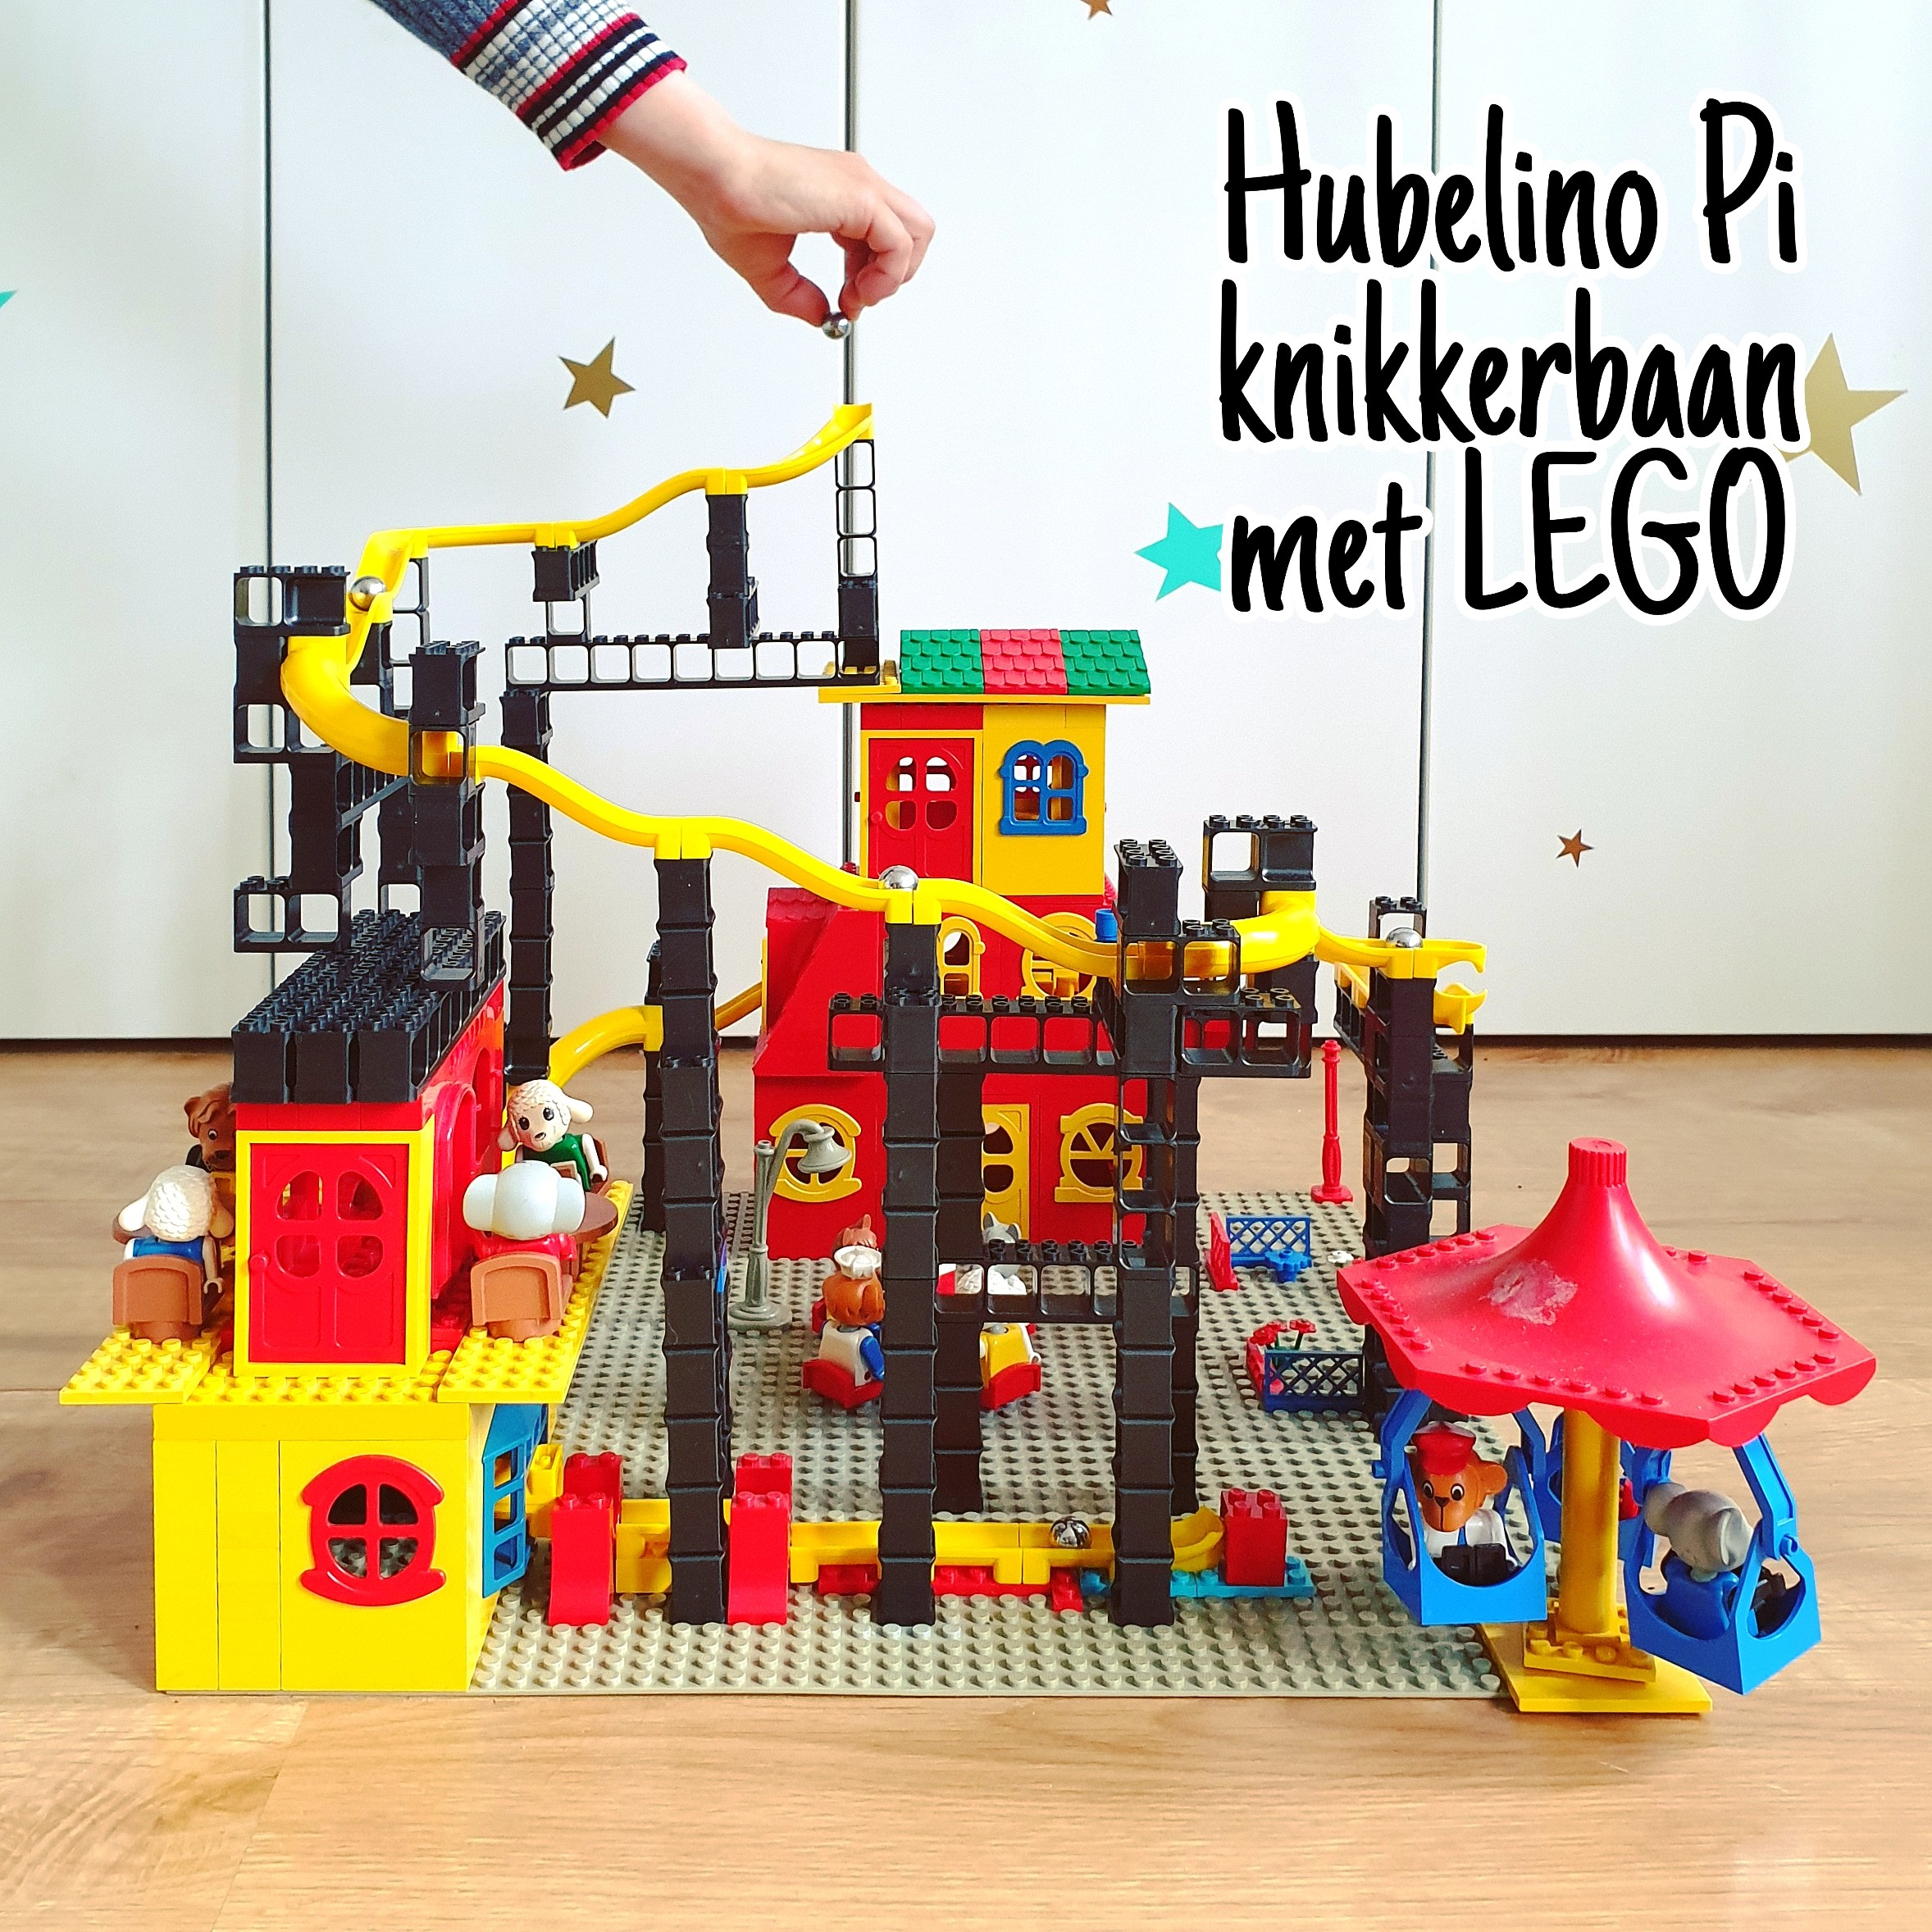 Hubelino Pi knikkerbaan: review en ideeën om te combineren met LEGO